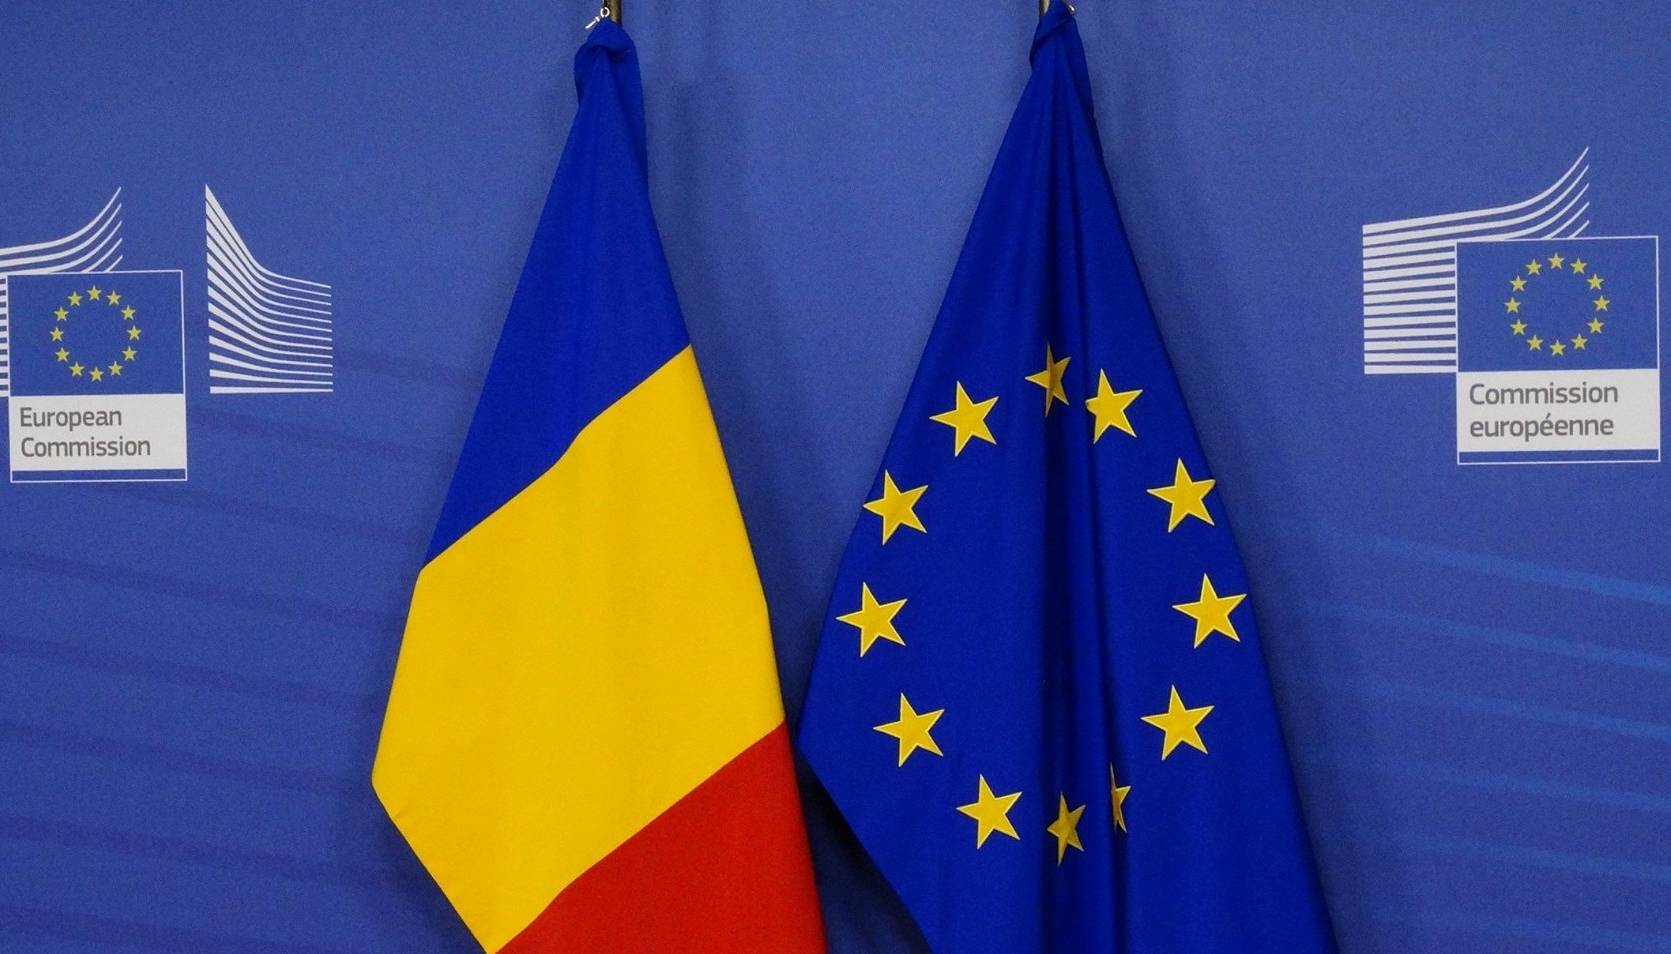 Comisia Europeana Finanta Reconstructia Ucrainei Razboi